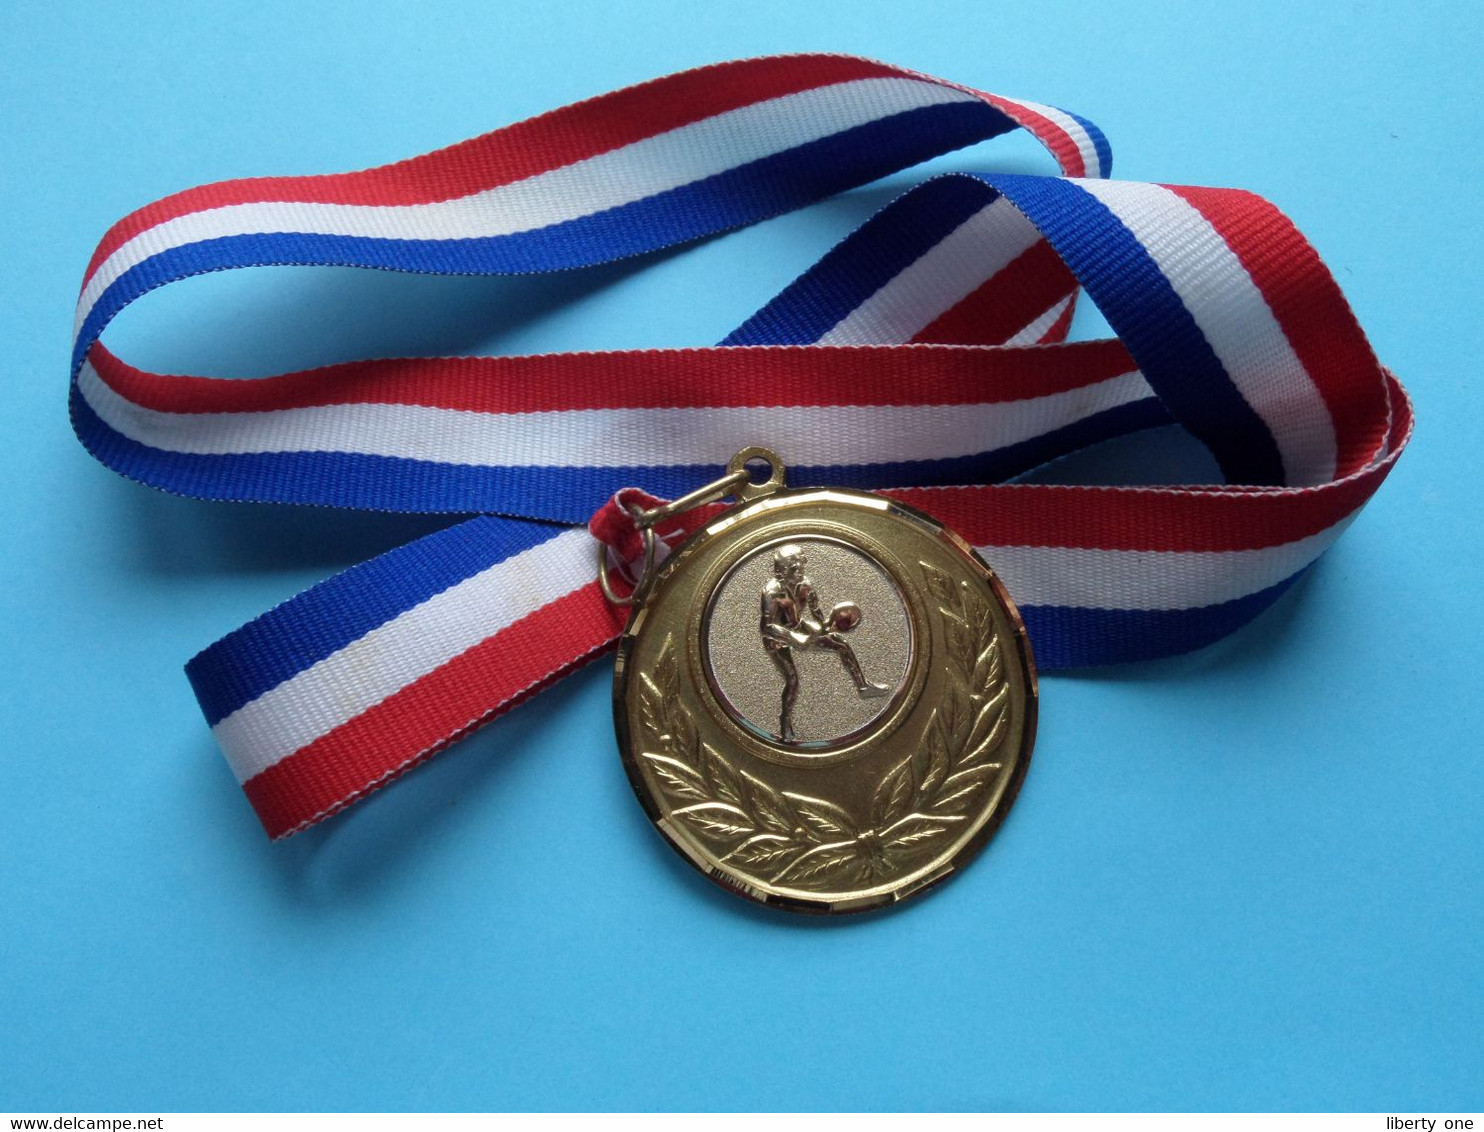 1st Prize BOY'S Consolation Van KEEKEN Tournament 1995 / Goudkleurige Medaille TENNIS ( For Grade, Please See Photo ) ! - Habillement, Souvenirs & Autres